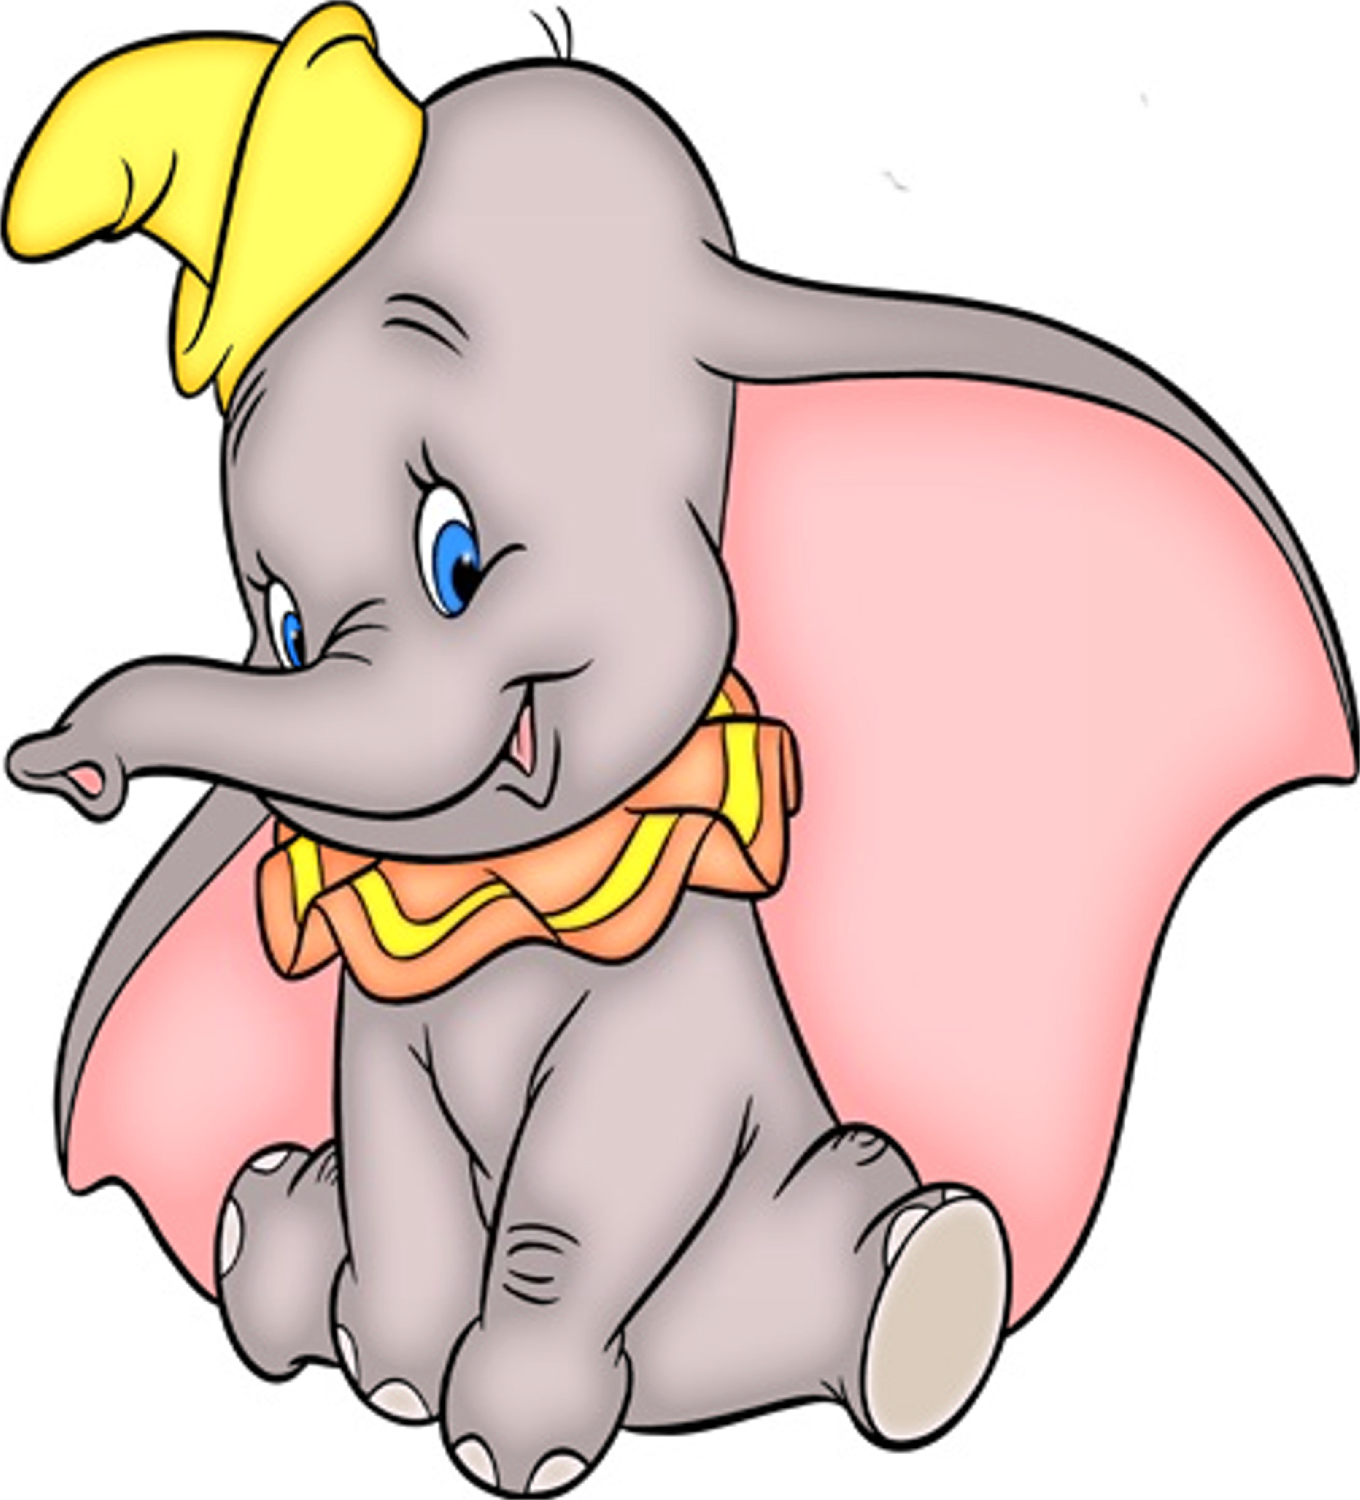 3B239851E79E2748E7Bc73E789038Cfe.png - Dumbo Elephant, Transparent background PNG HD thumbnail